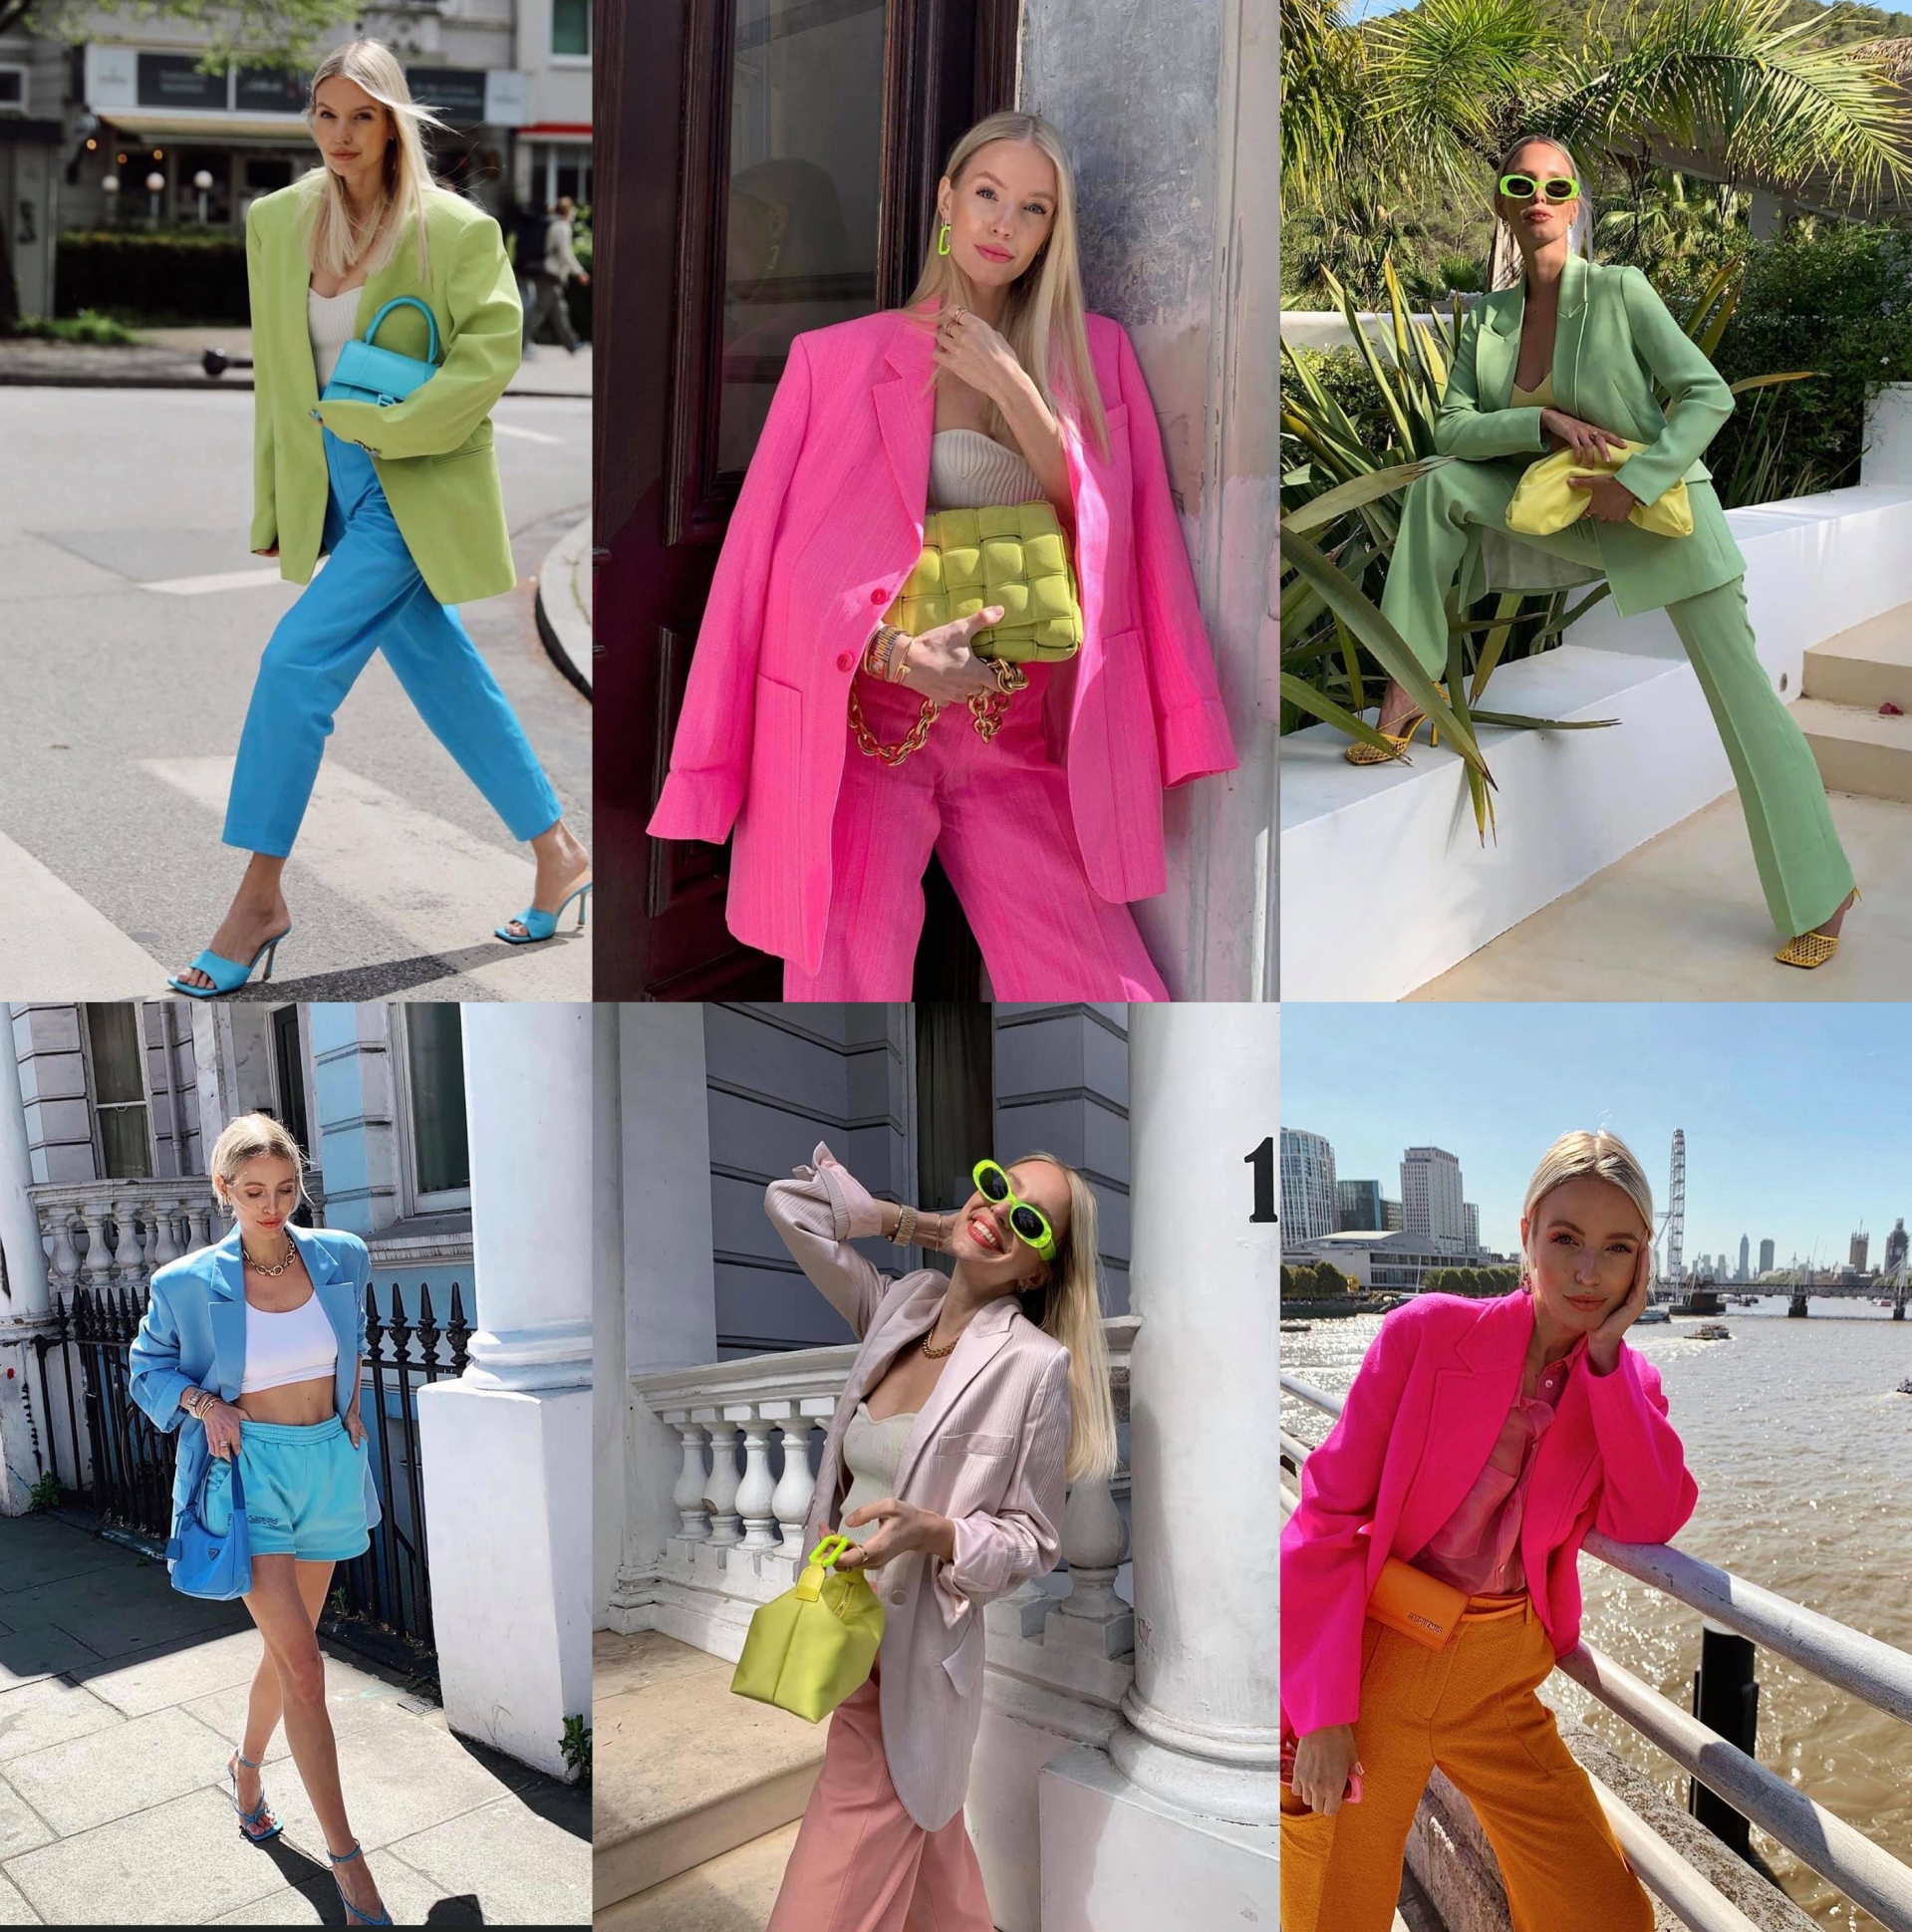 Thời trang của Leonie không thể thiếu màu sắc. Để tạo sự độc nhất trong phong cách thời trang, nữ blogger luôn xuất hiện với những gam màu nổi bật đại diện cho tông nóng - lạnh rõ rệt hoặc gây ấn tượng bằng bảng màu đồng điệu.